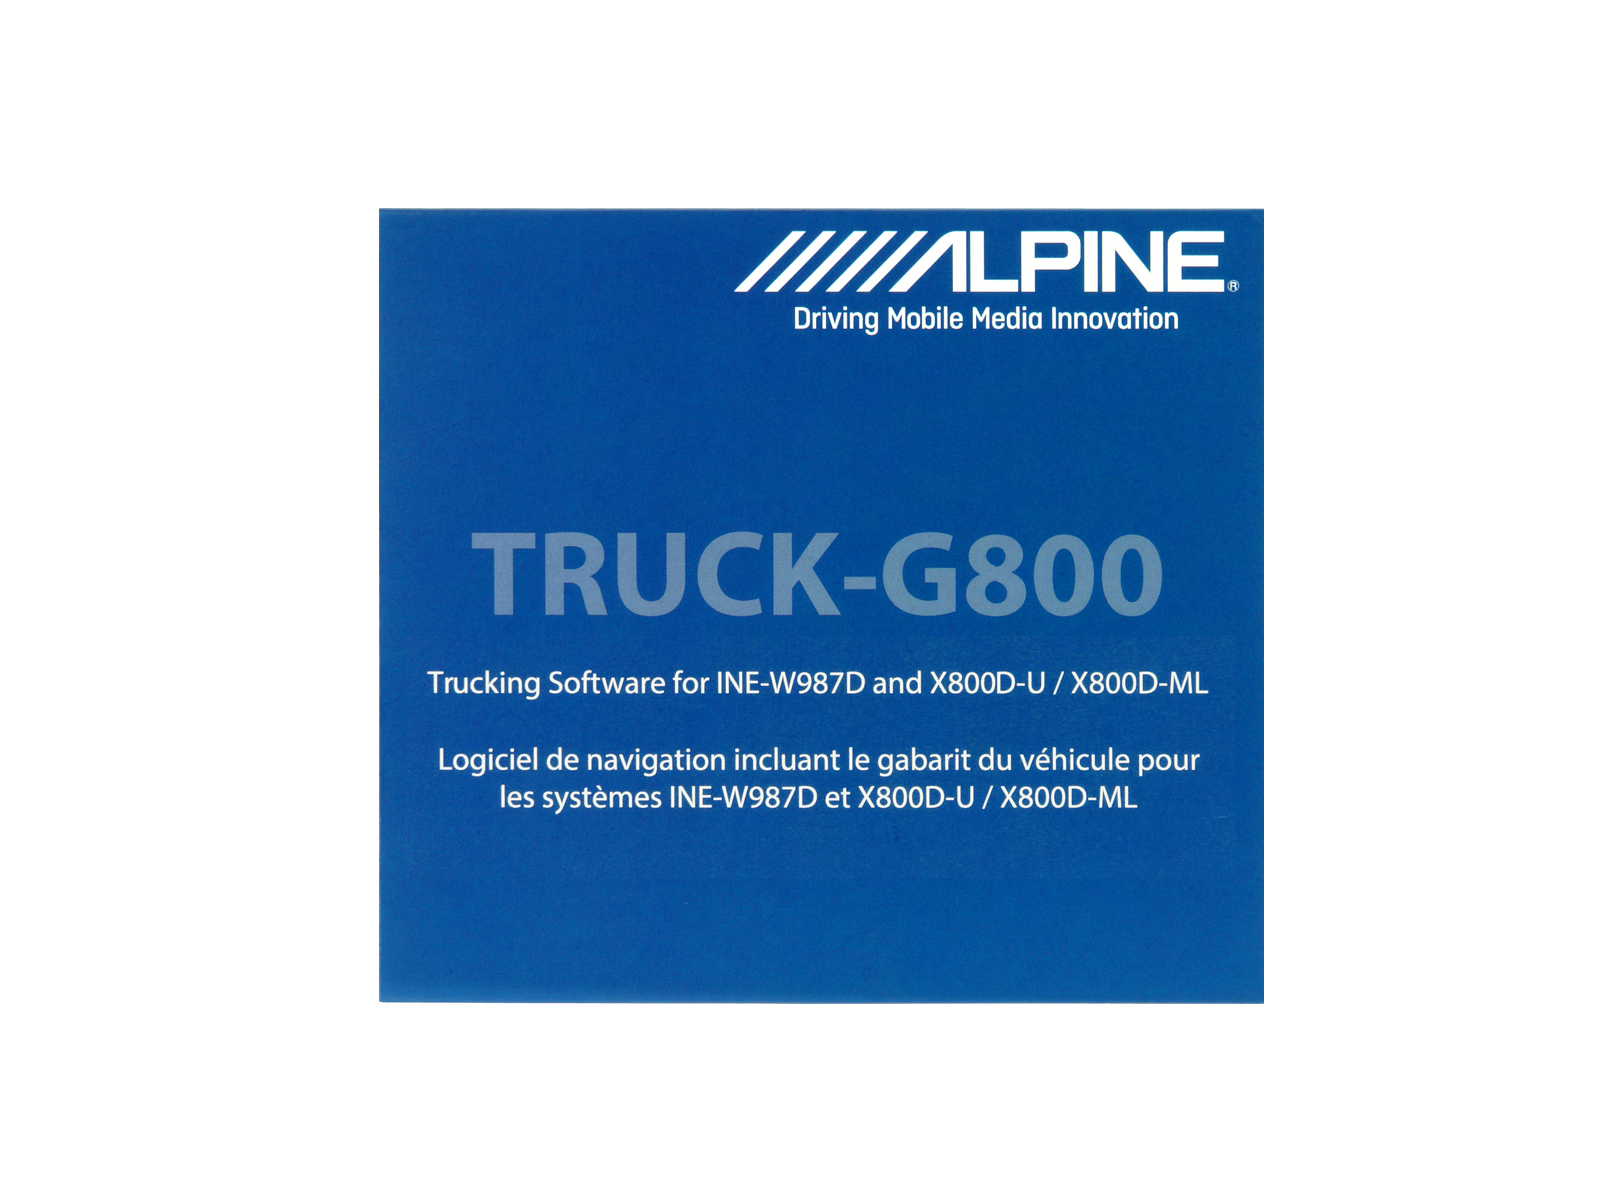 Alpine TRUCK-G800 Camping, Caravan & LKW Software für INE-W987D / X800D-U / X800D-ML / X800D-V / X800D-V447 / X800D-S906